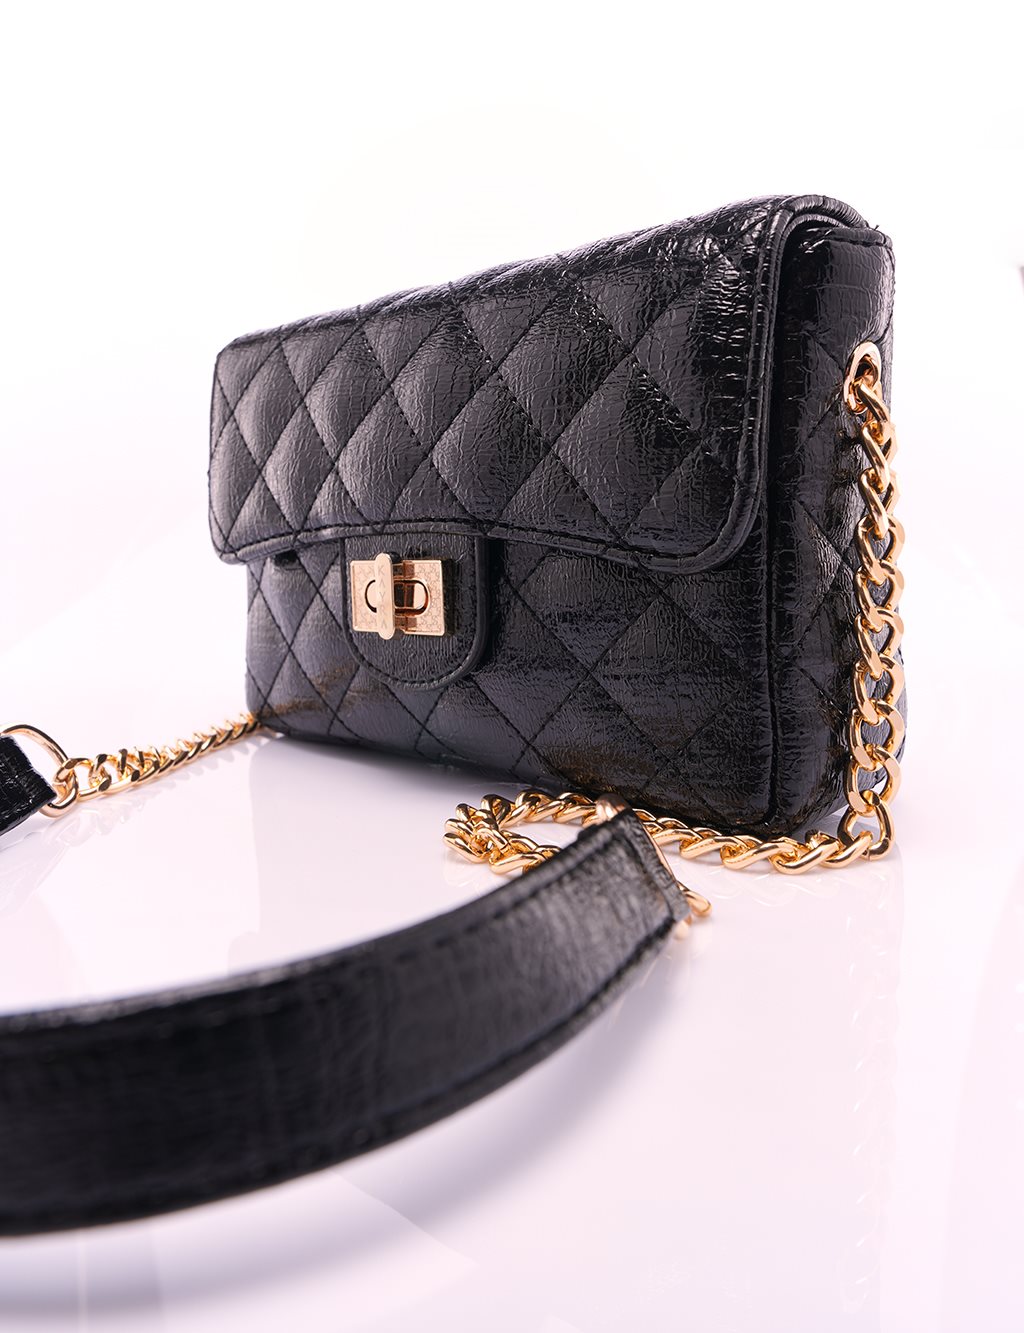 Padlock-embellished Textured Patent Leather Bag Black